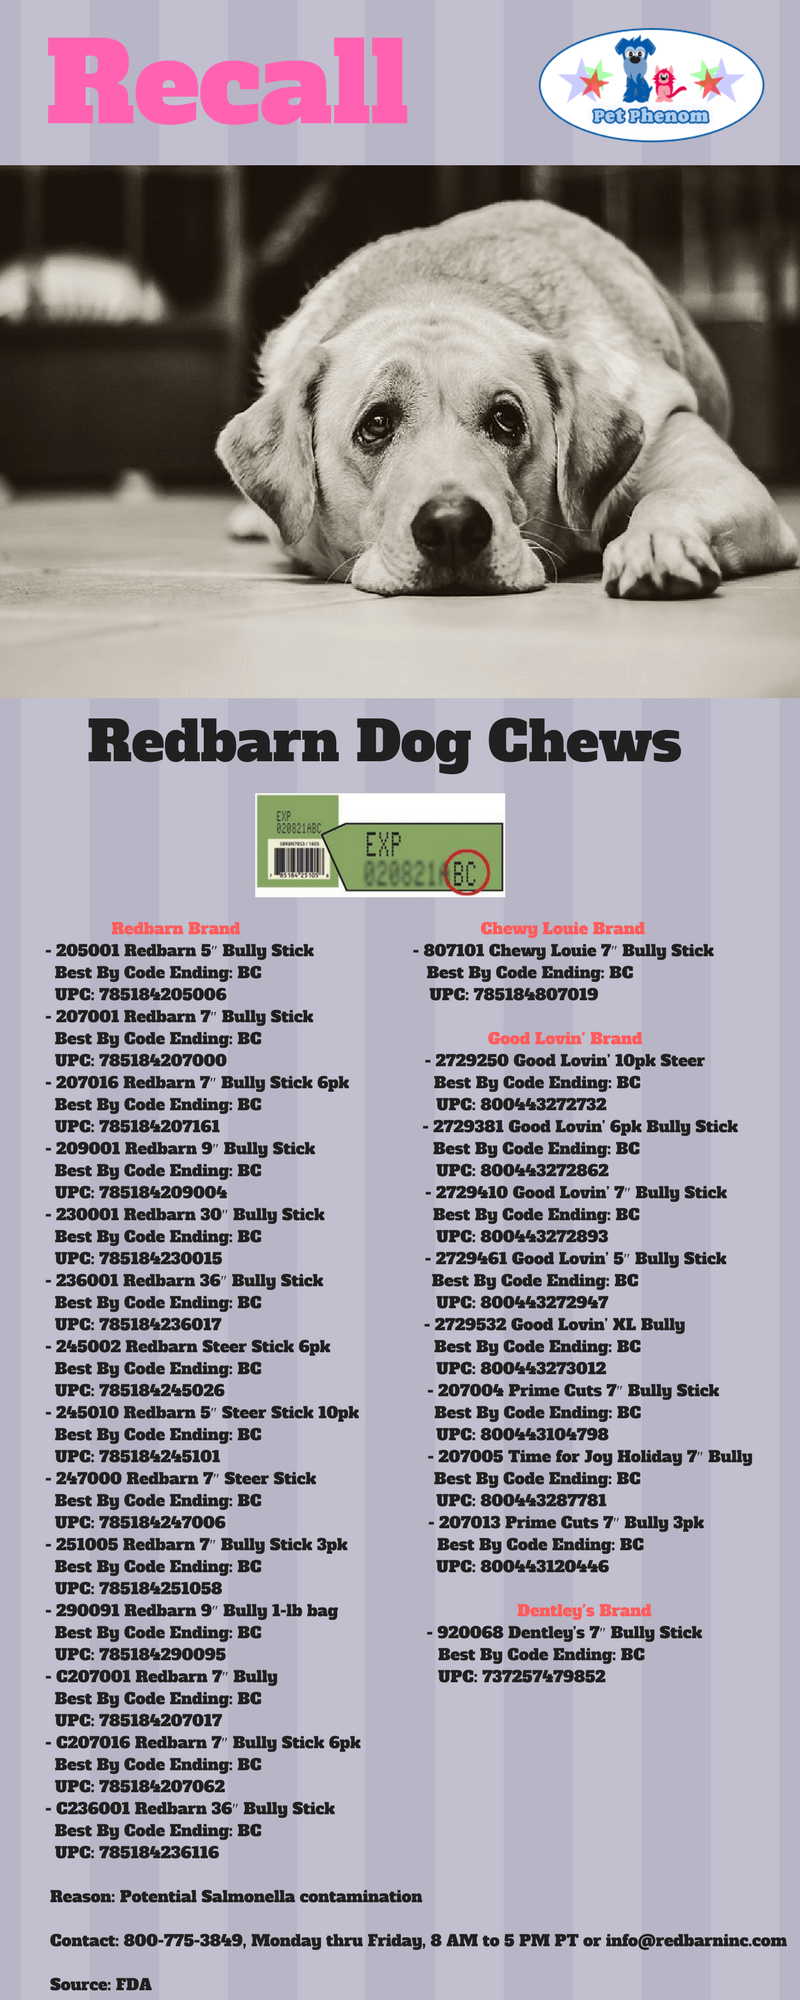 Redbarn Dog Chews Recall